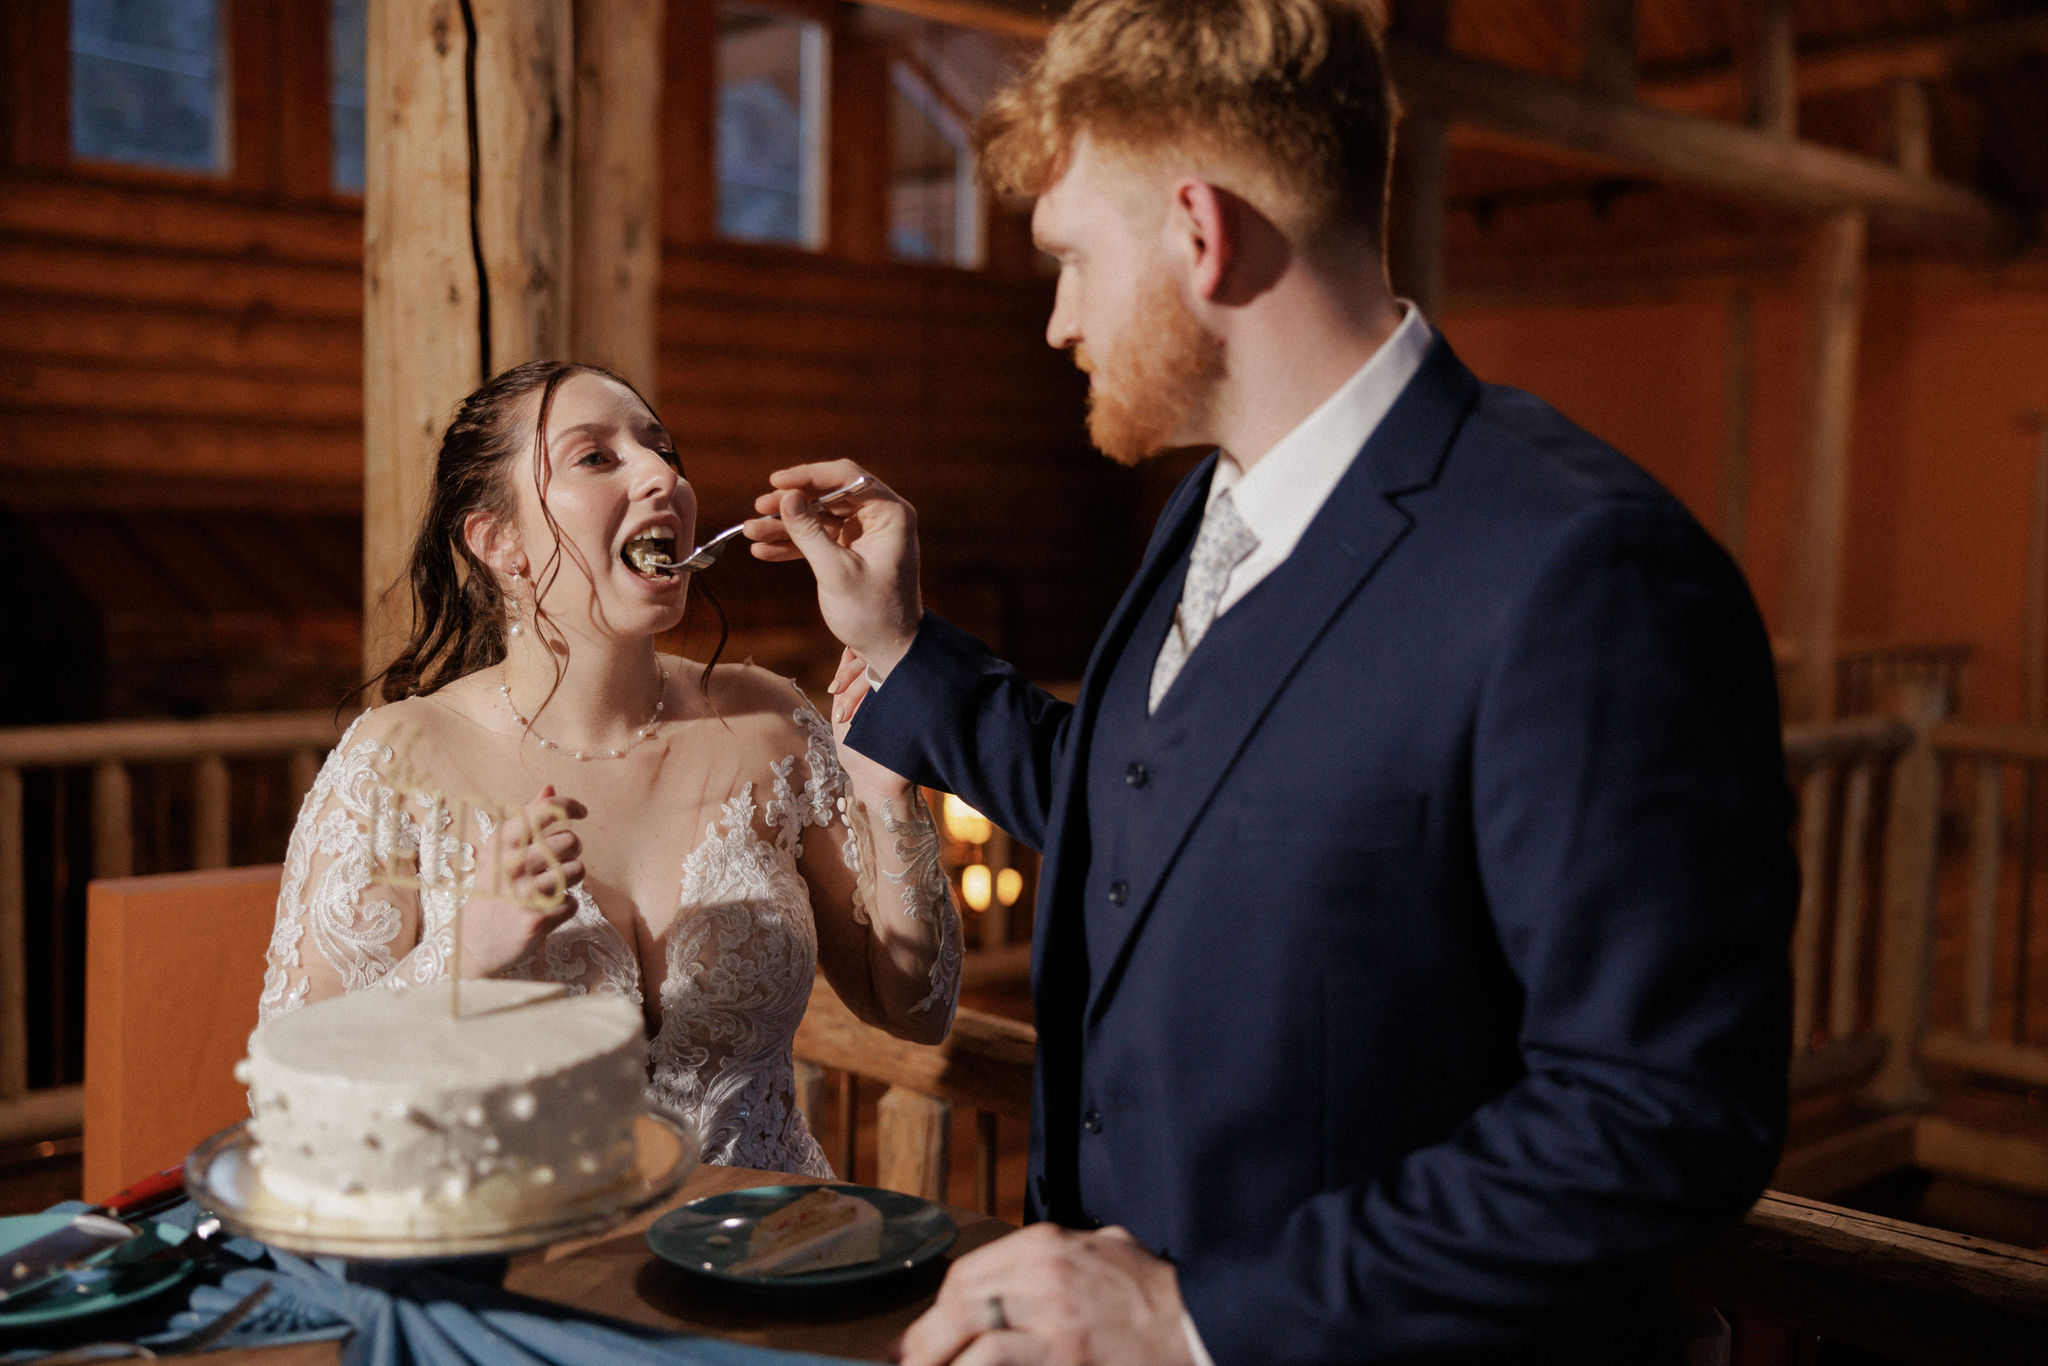 groom feeds bride a bite of wedding cake